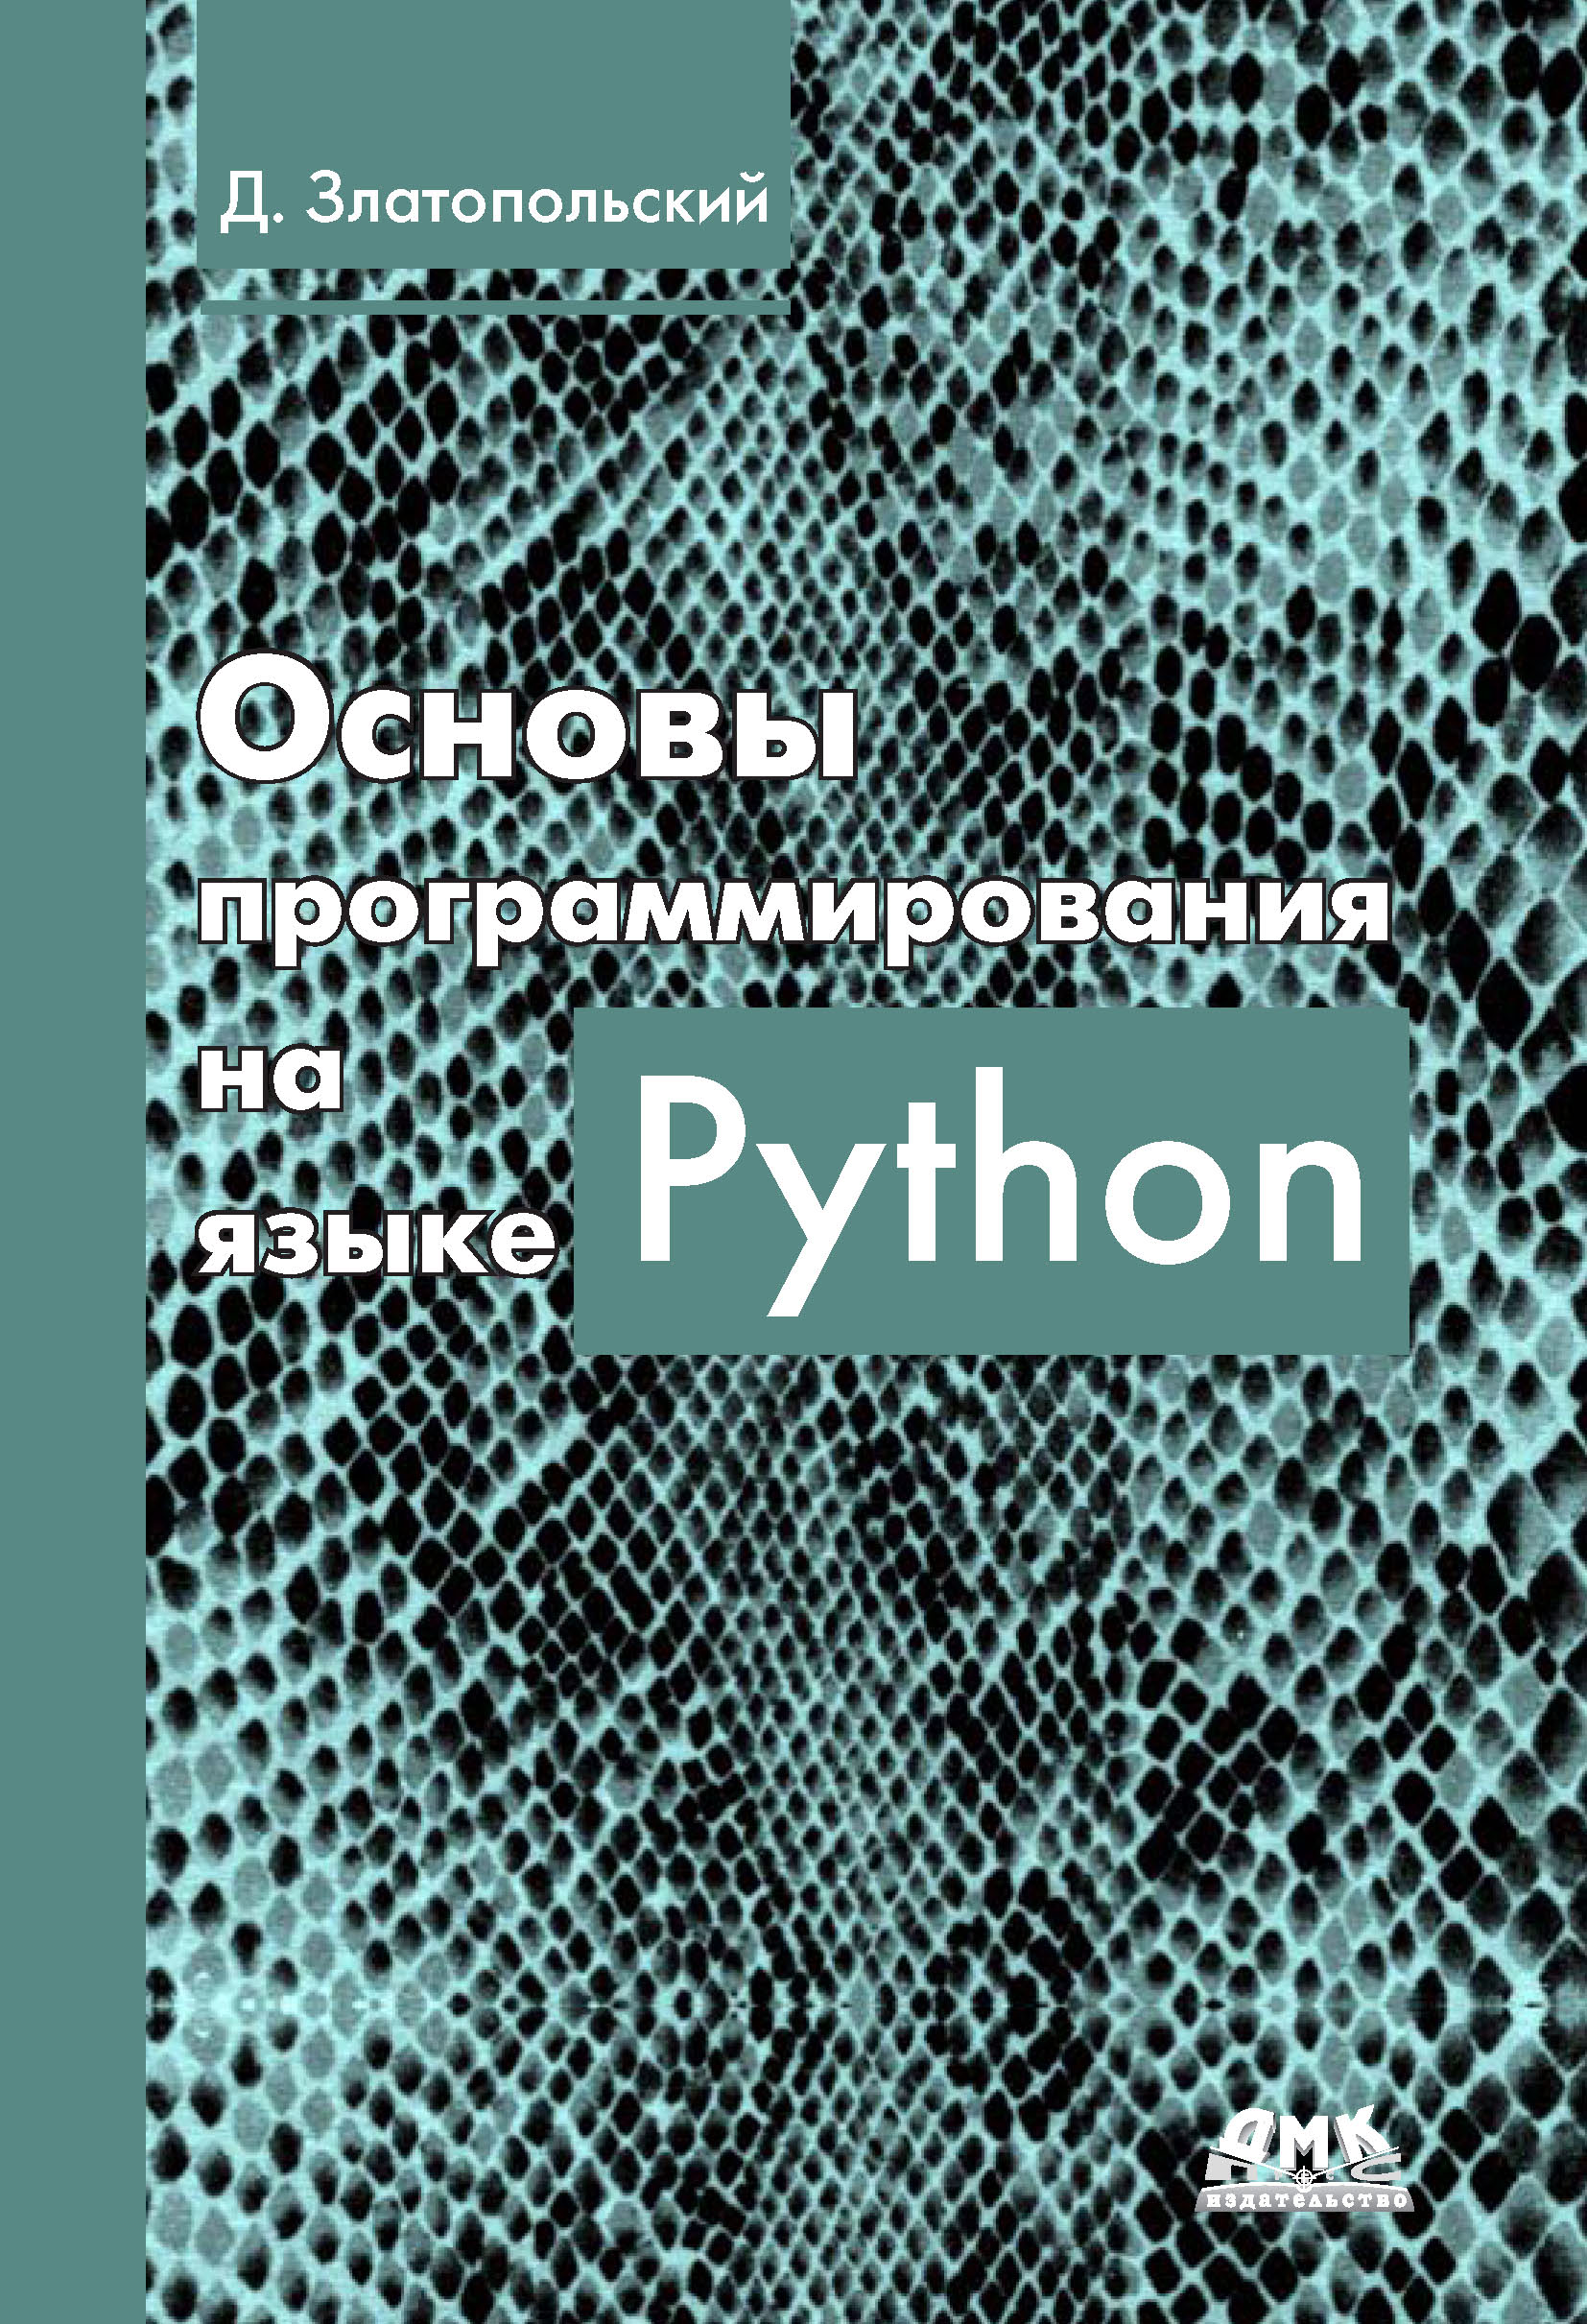 Книга  Основы программирования на языке Python созданная Д. М. Златопольский может относится к жанру программирование. Стоимость электронной книги Основы программирования на языке Python с идентификатором 27067324 составляет 439.00 руб.